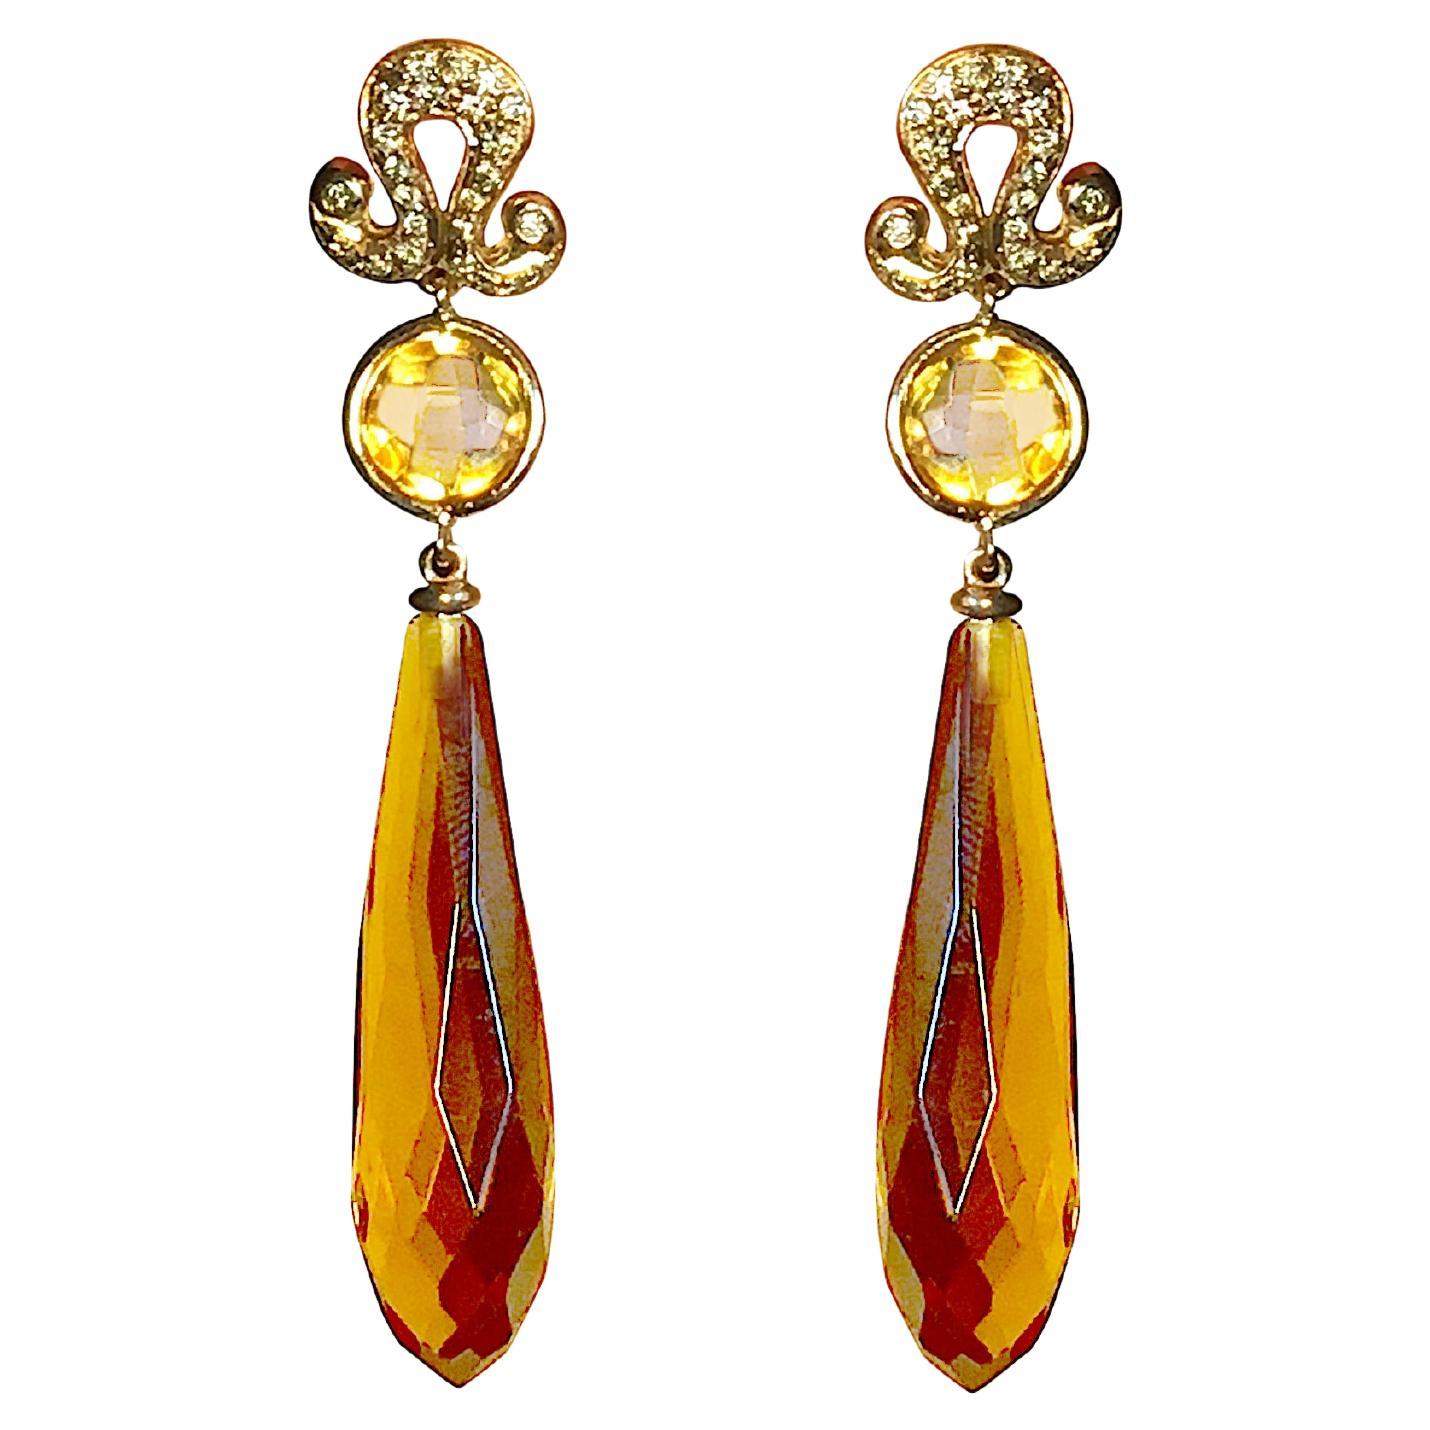 Pendants d'oreilles de style Art déco en or 18 carats avec citrine et diamants de 0,20 carat couleur miel